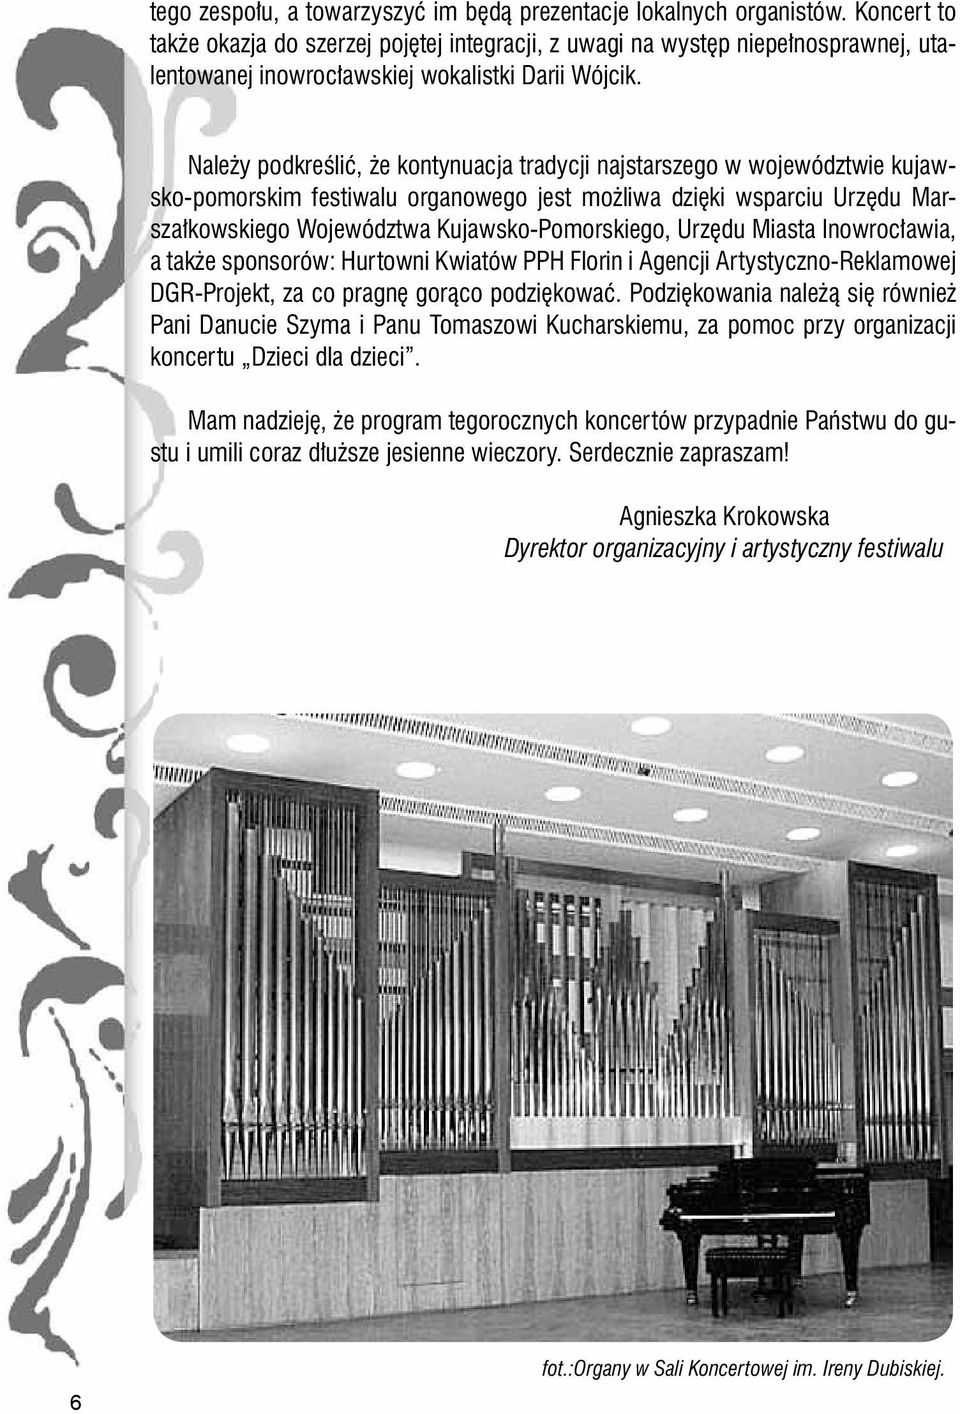 Należy podkreślić, że kontynuacja tradycji najstarszego w województwie kujawsko-pomorskim festiwalu organowego jest możliwa dzięki wsparciu Urzędu Marszałkowskiego Województwa Kujawsko-Pomorskiego,